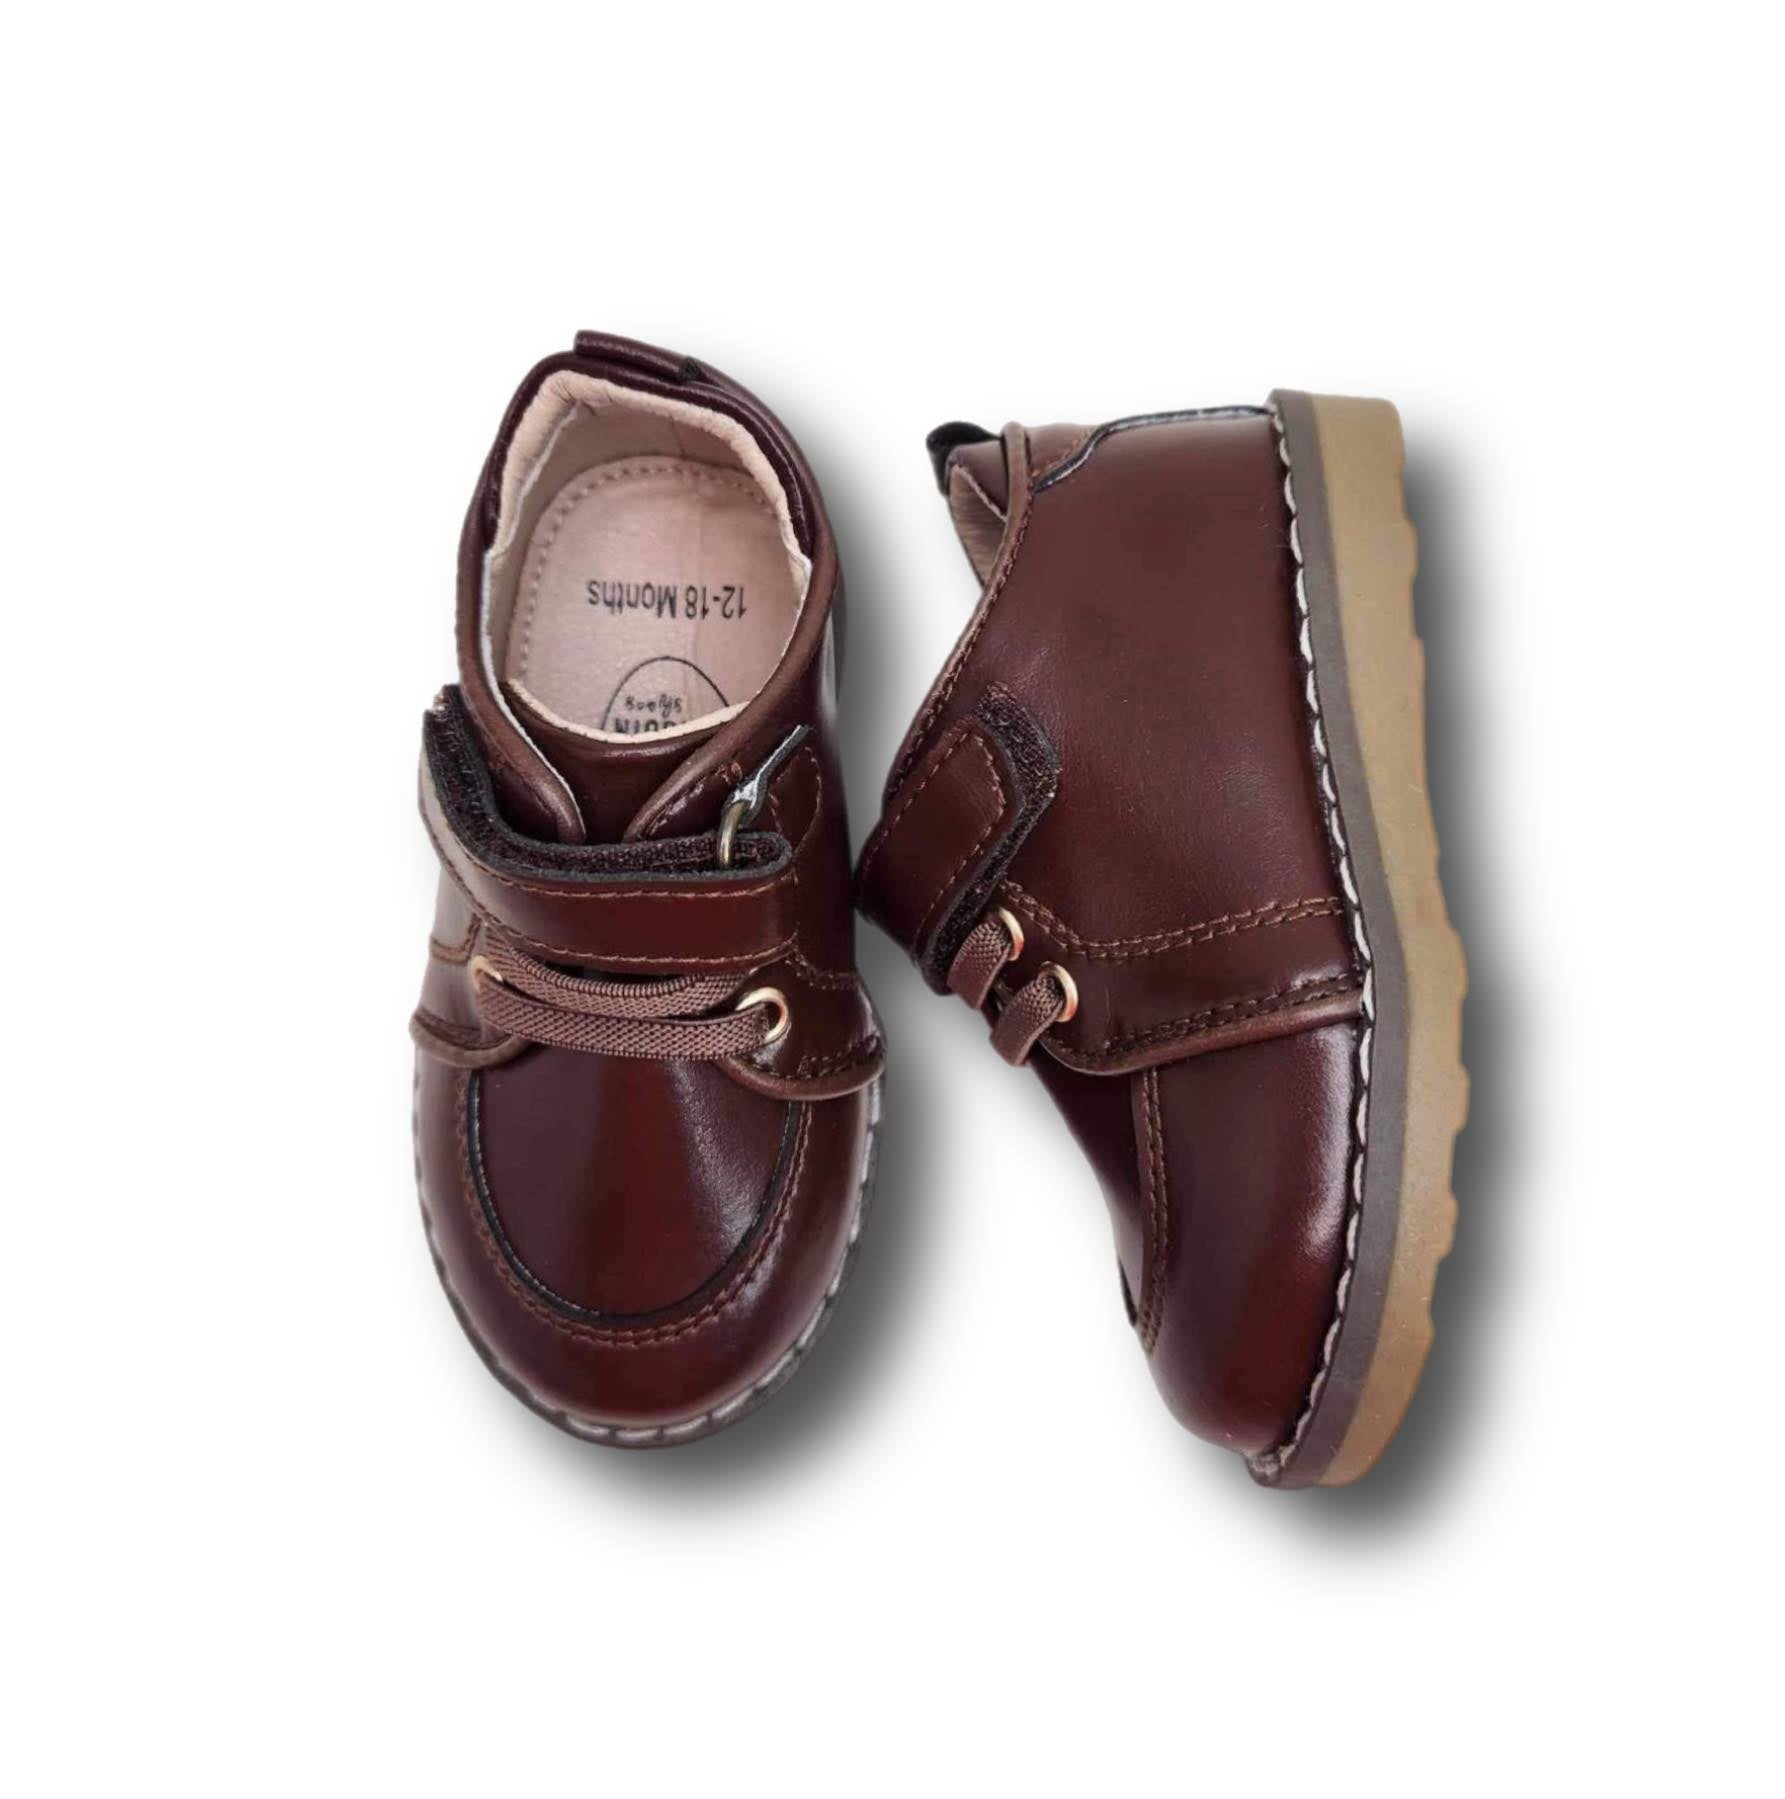 HARRISON Children's Shoe in Dark Brown Leather